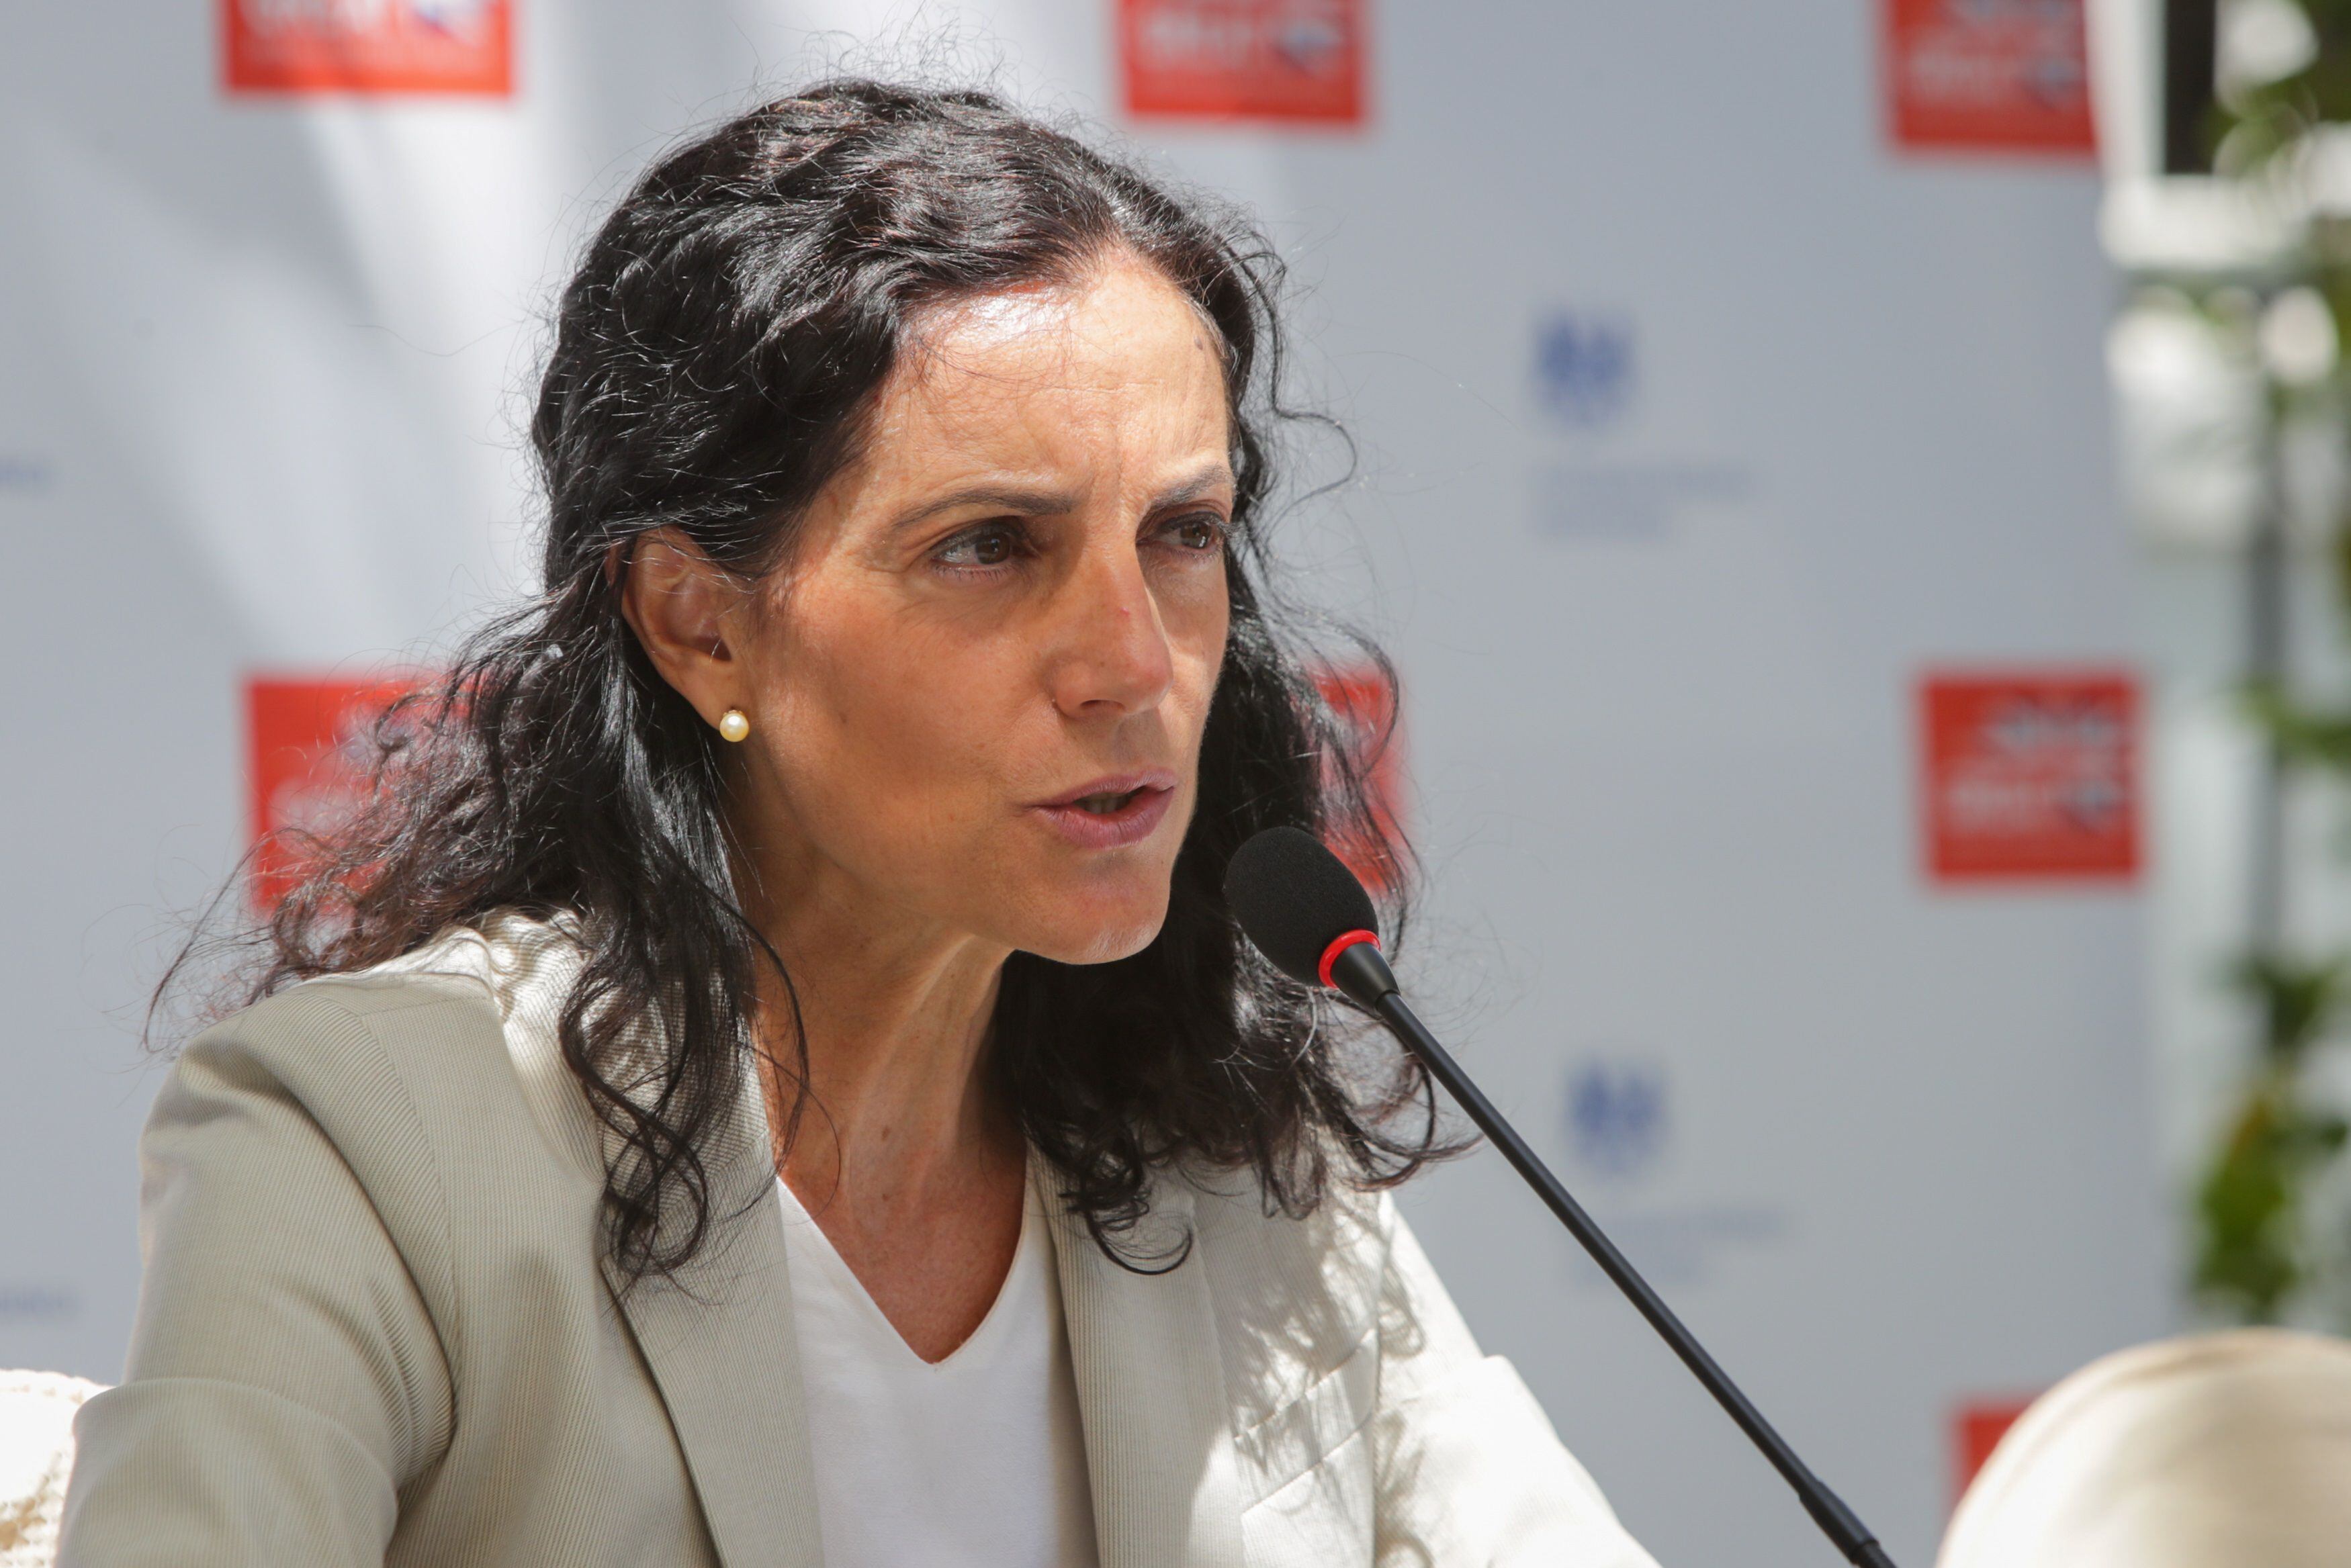 La ministra de Economía y Finanzas de Uruguay, Azucena Arbeleche, en una fotografía de archivo. EFE/Raúl Martínez